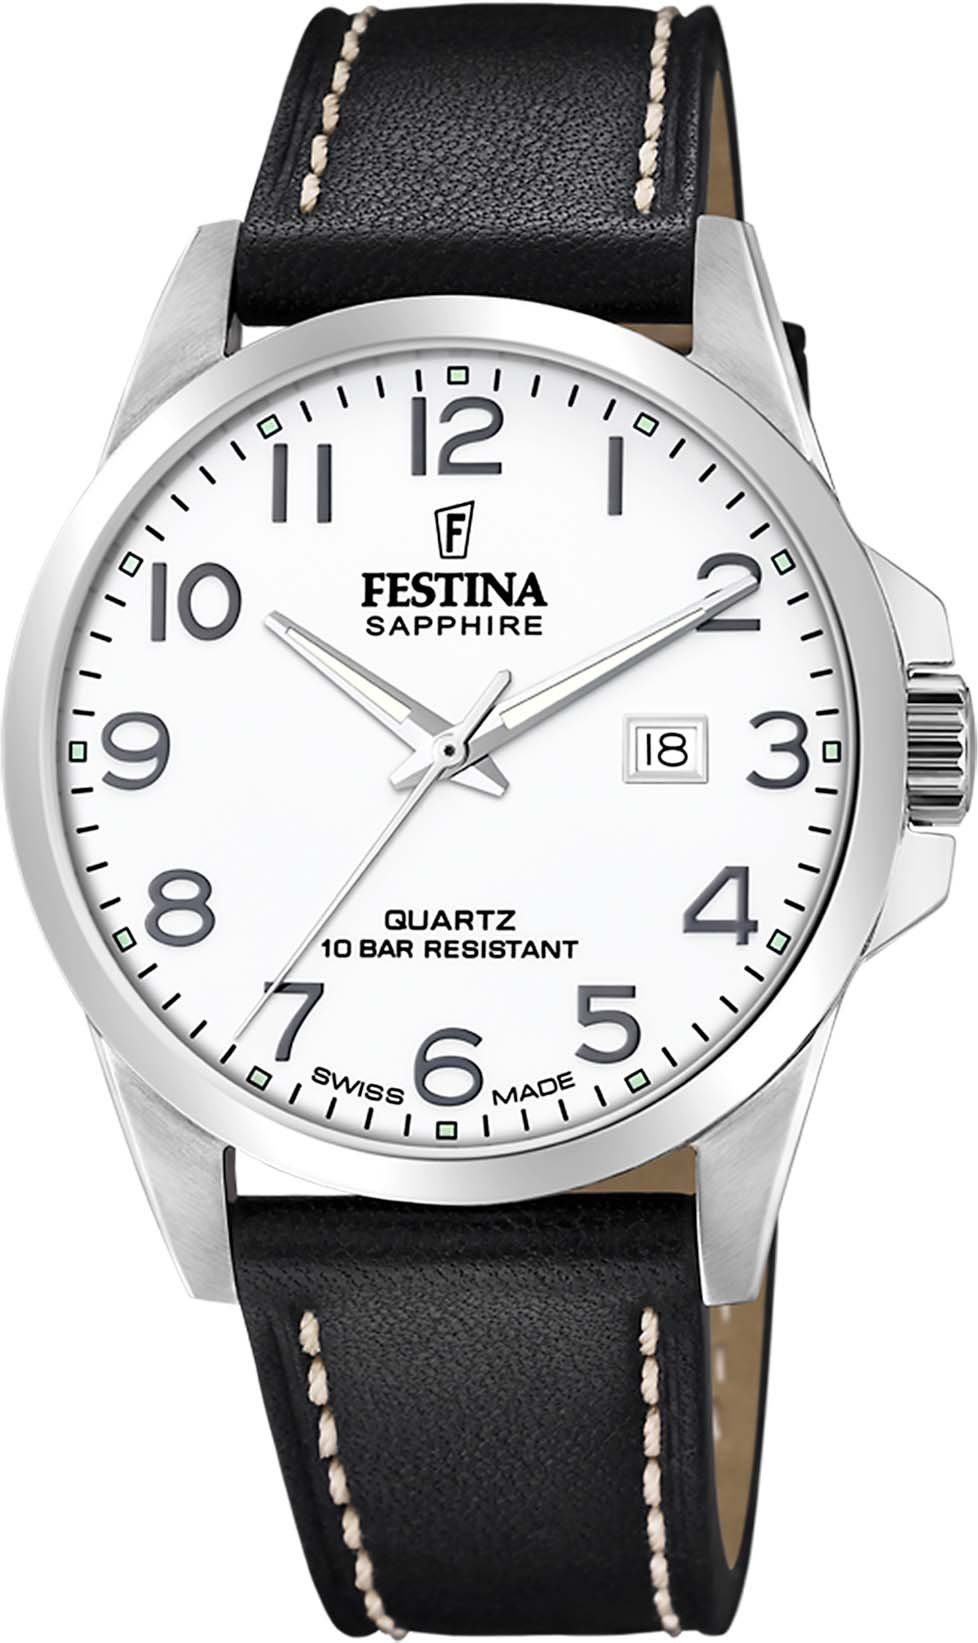 Festina Schweizer Uhr Swiss Made, F20025/1 | Schweizer Uhren